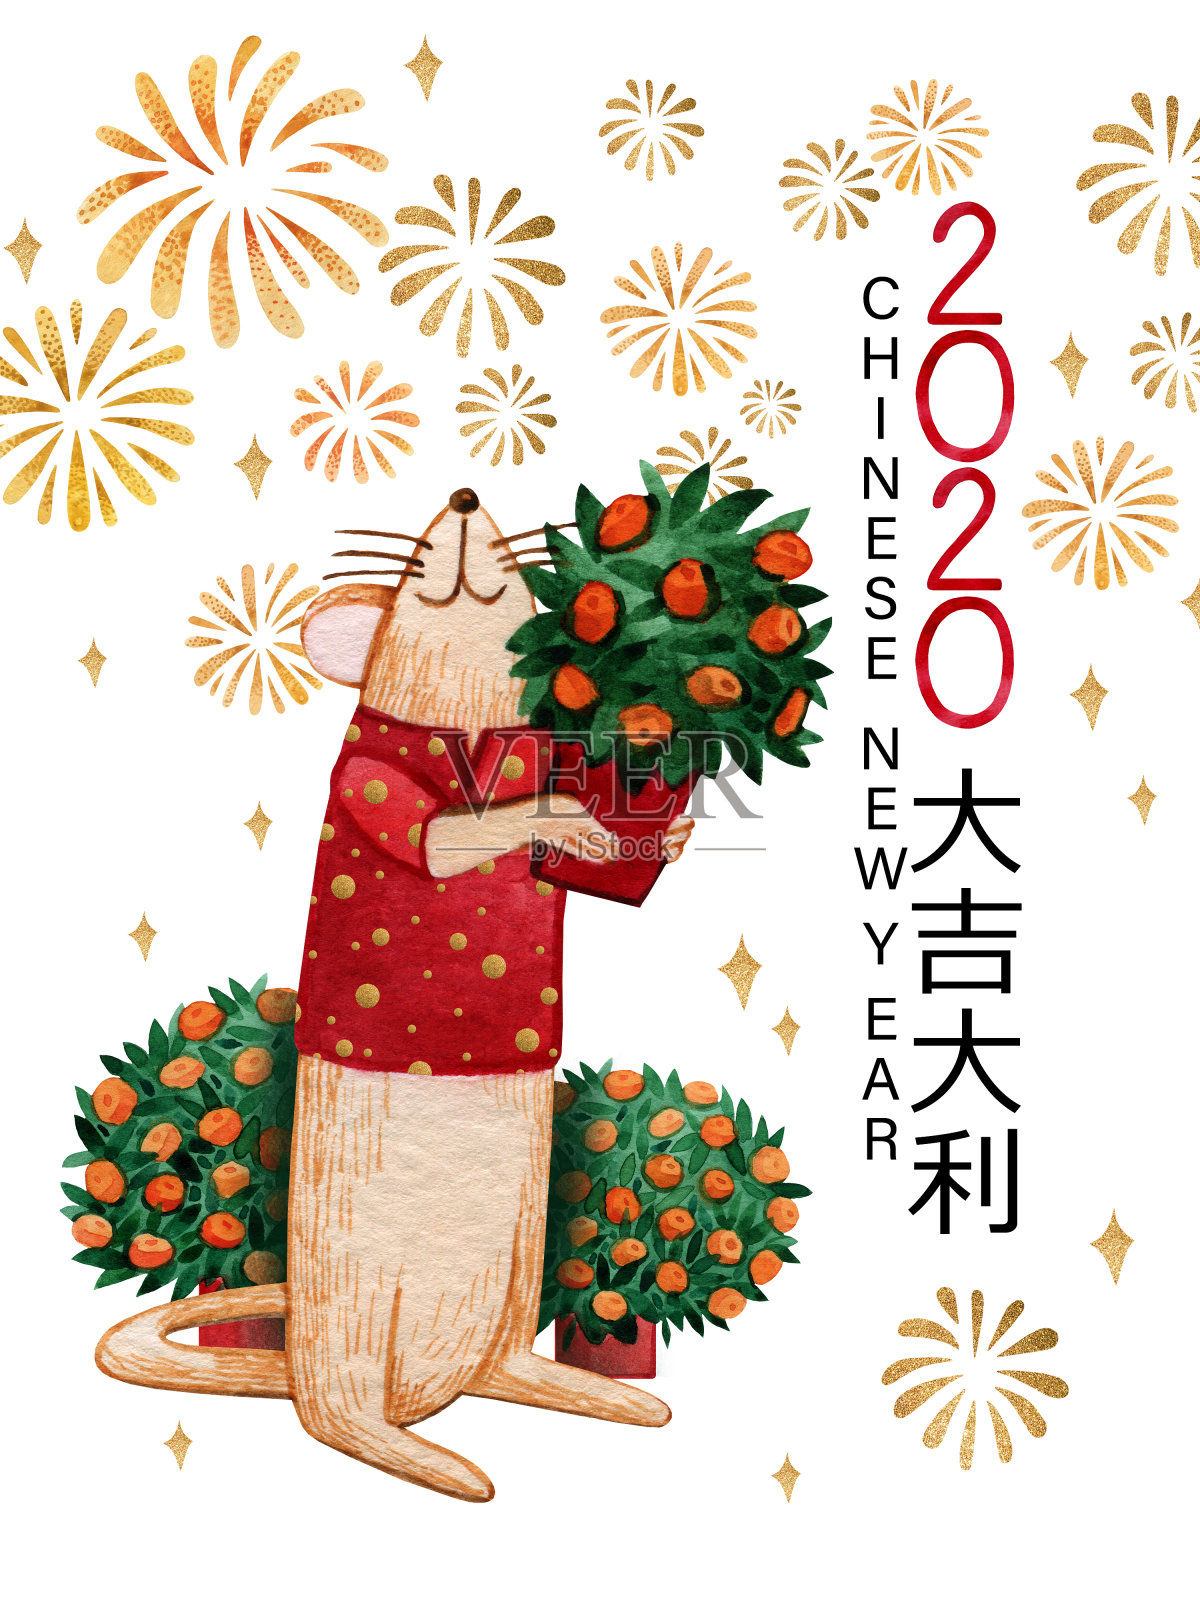 2020年中国新年的水彩画卡片，上面画着一个老鼠孩子。手画的老鼠穿着红衣服，手里拿着一棵橘子树。老鼠看着天空中金色的烟花。设计模板素材